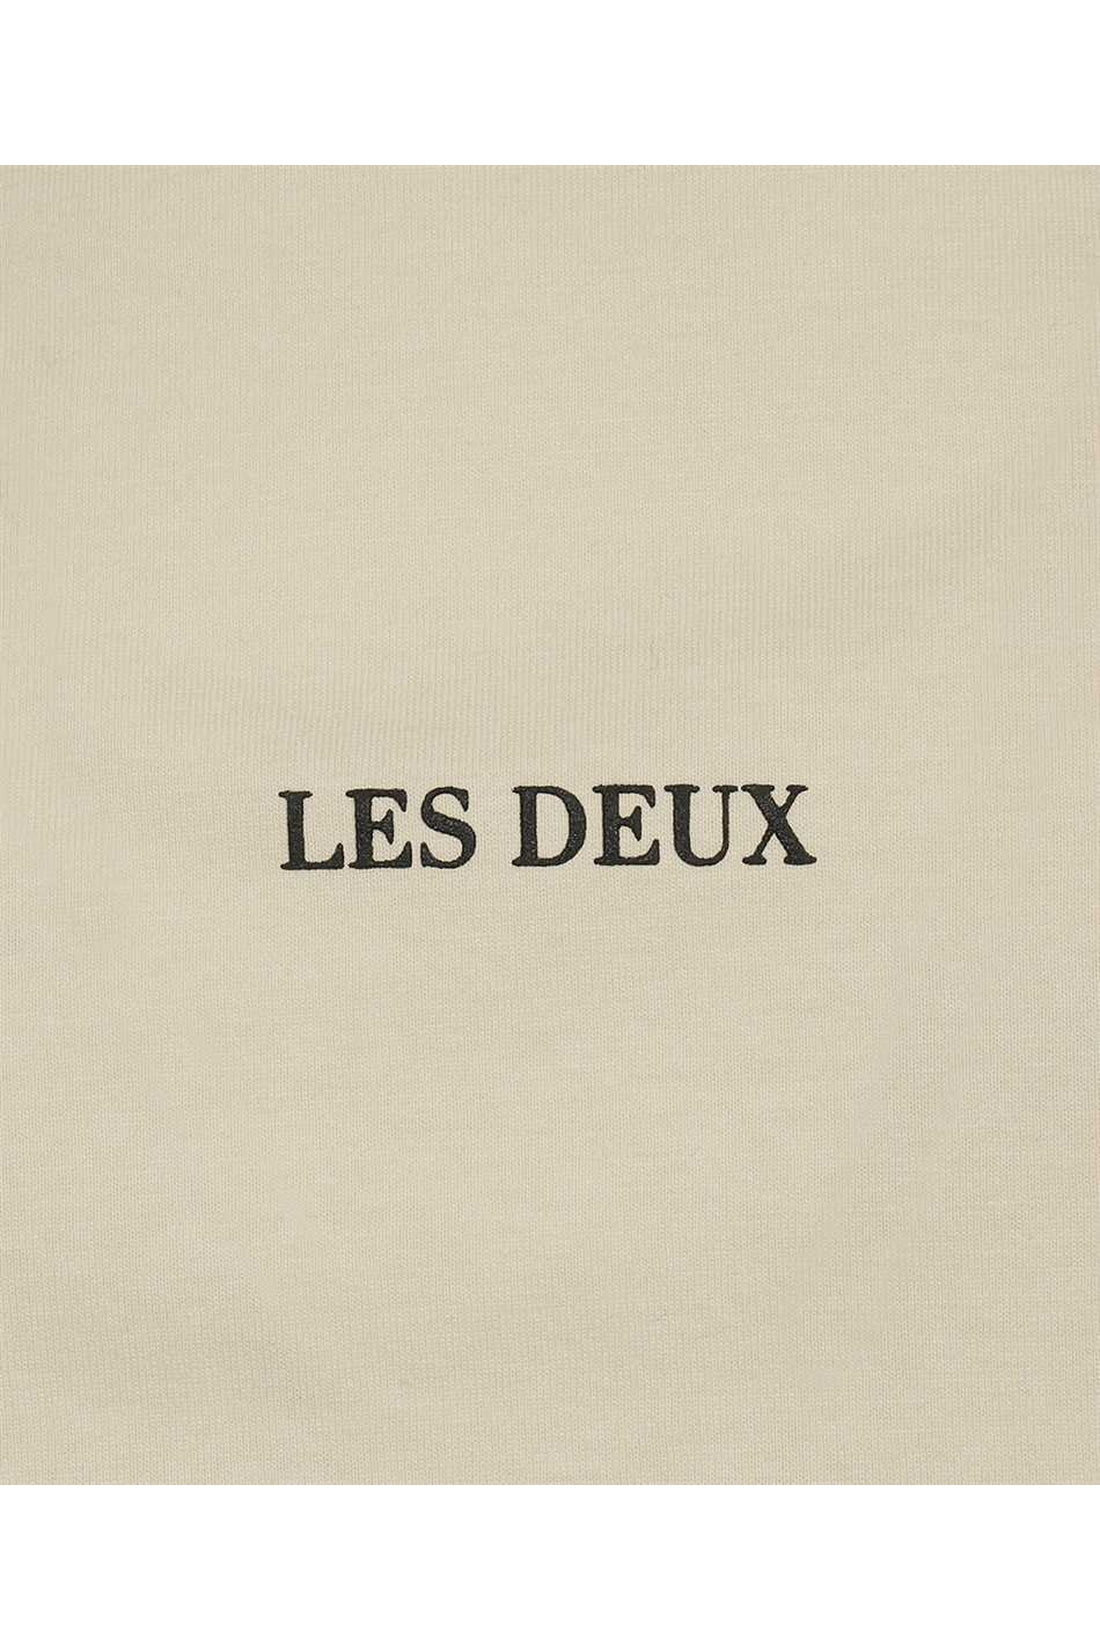 Les Deux-OUTLET-SALE-Lens cotton crew-neck T-shirt-ARCHIVIST